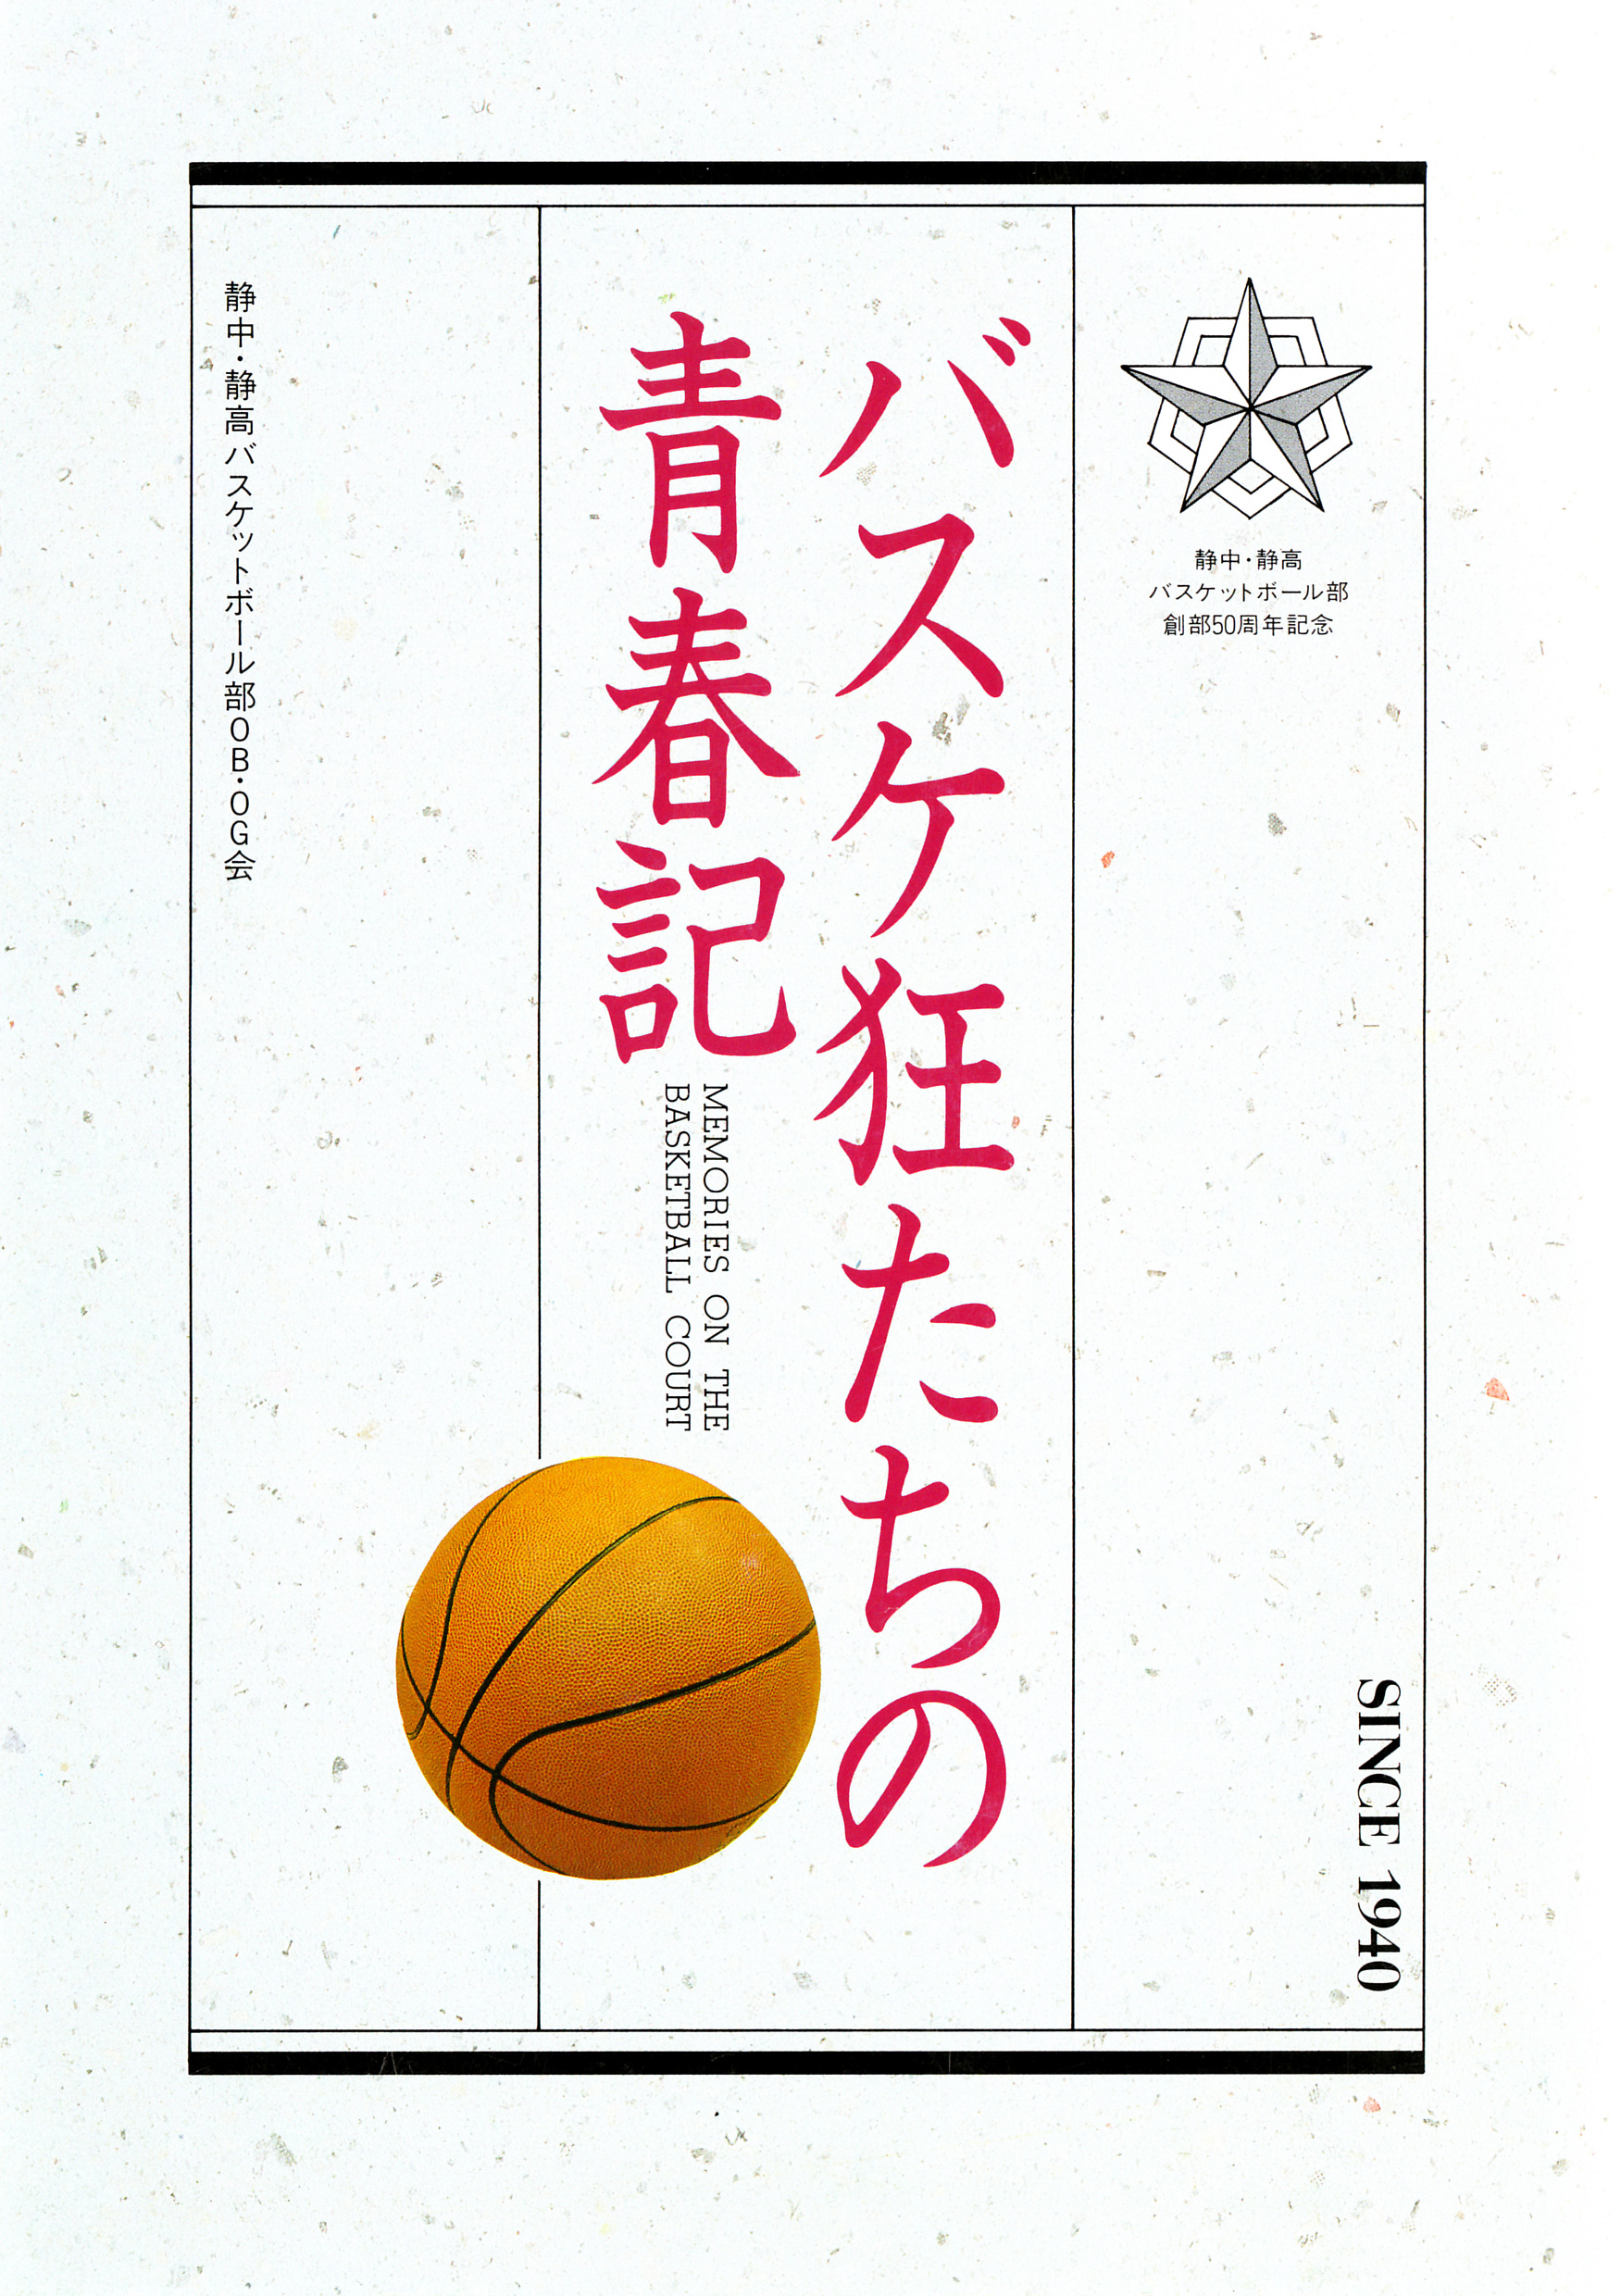 バスケ狂たちの青春記 がんばれ 静岡高校バスケットボール部